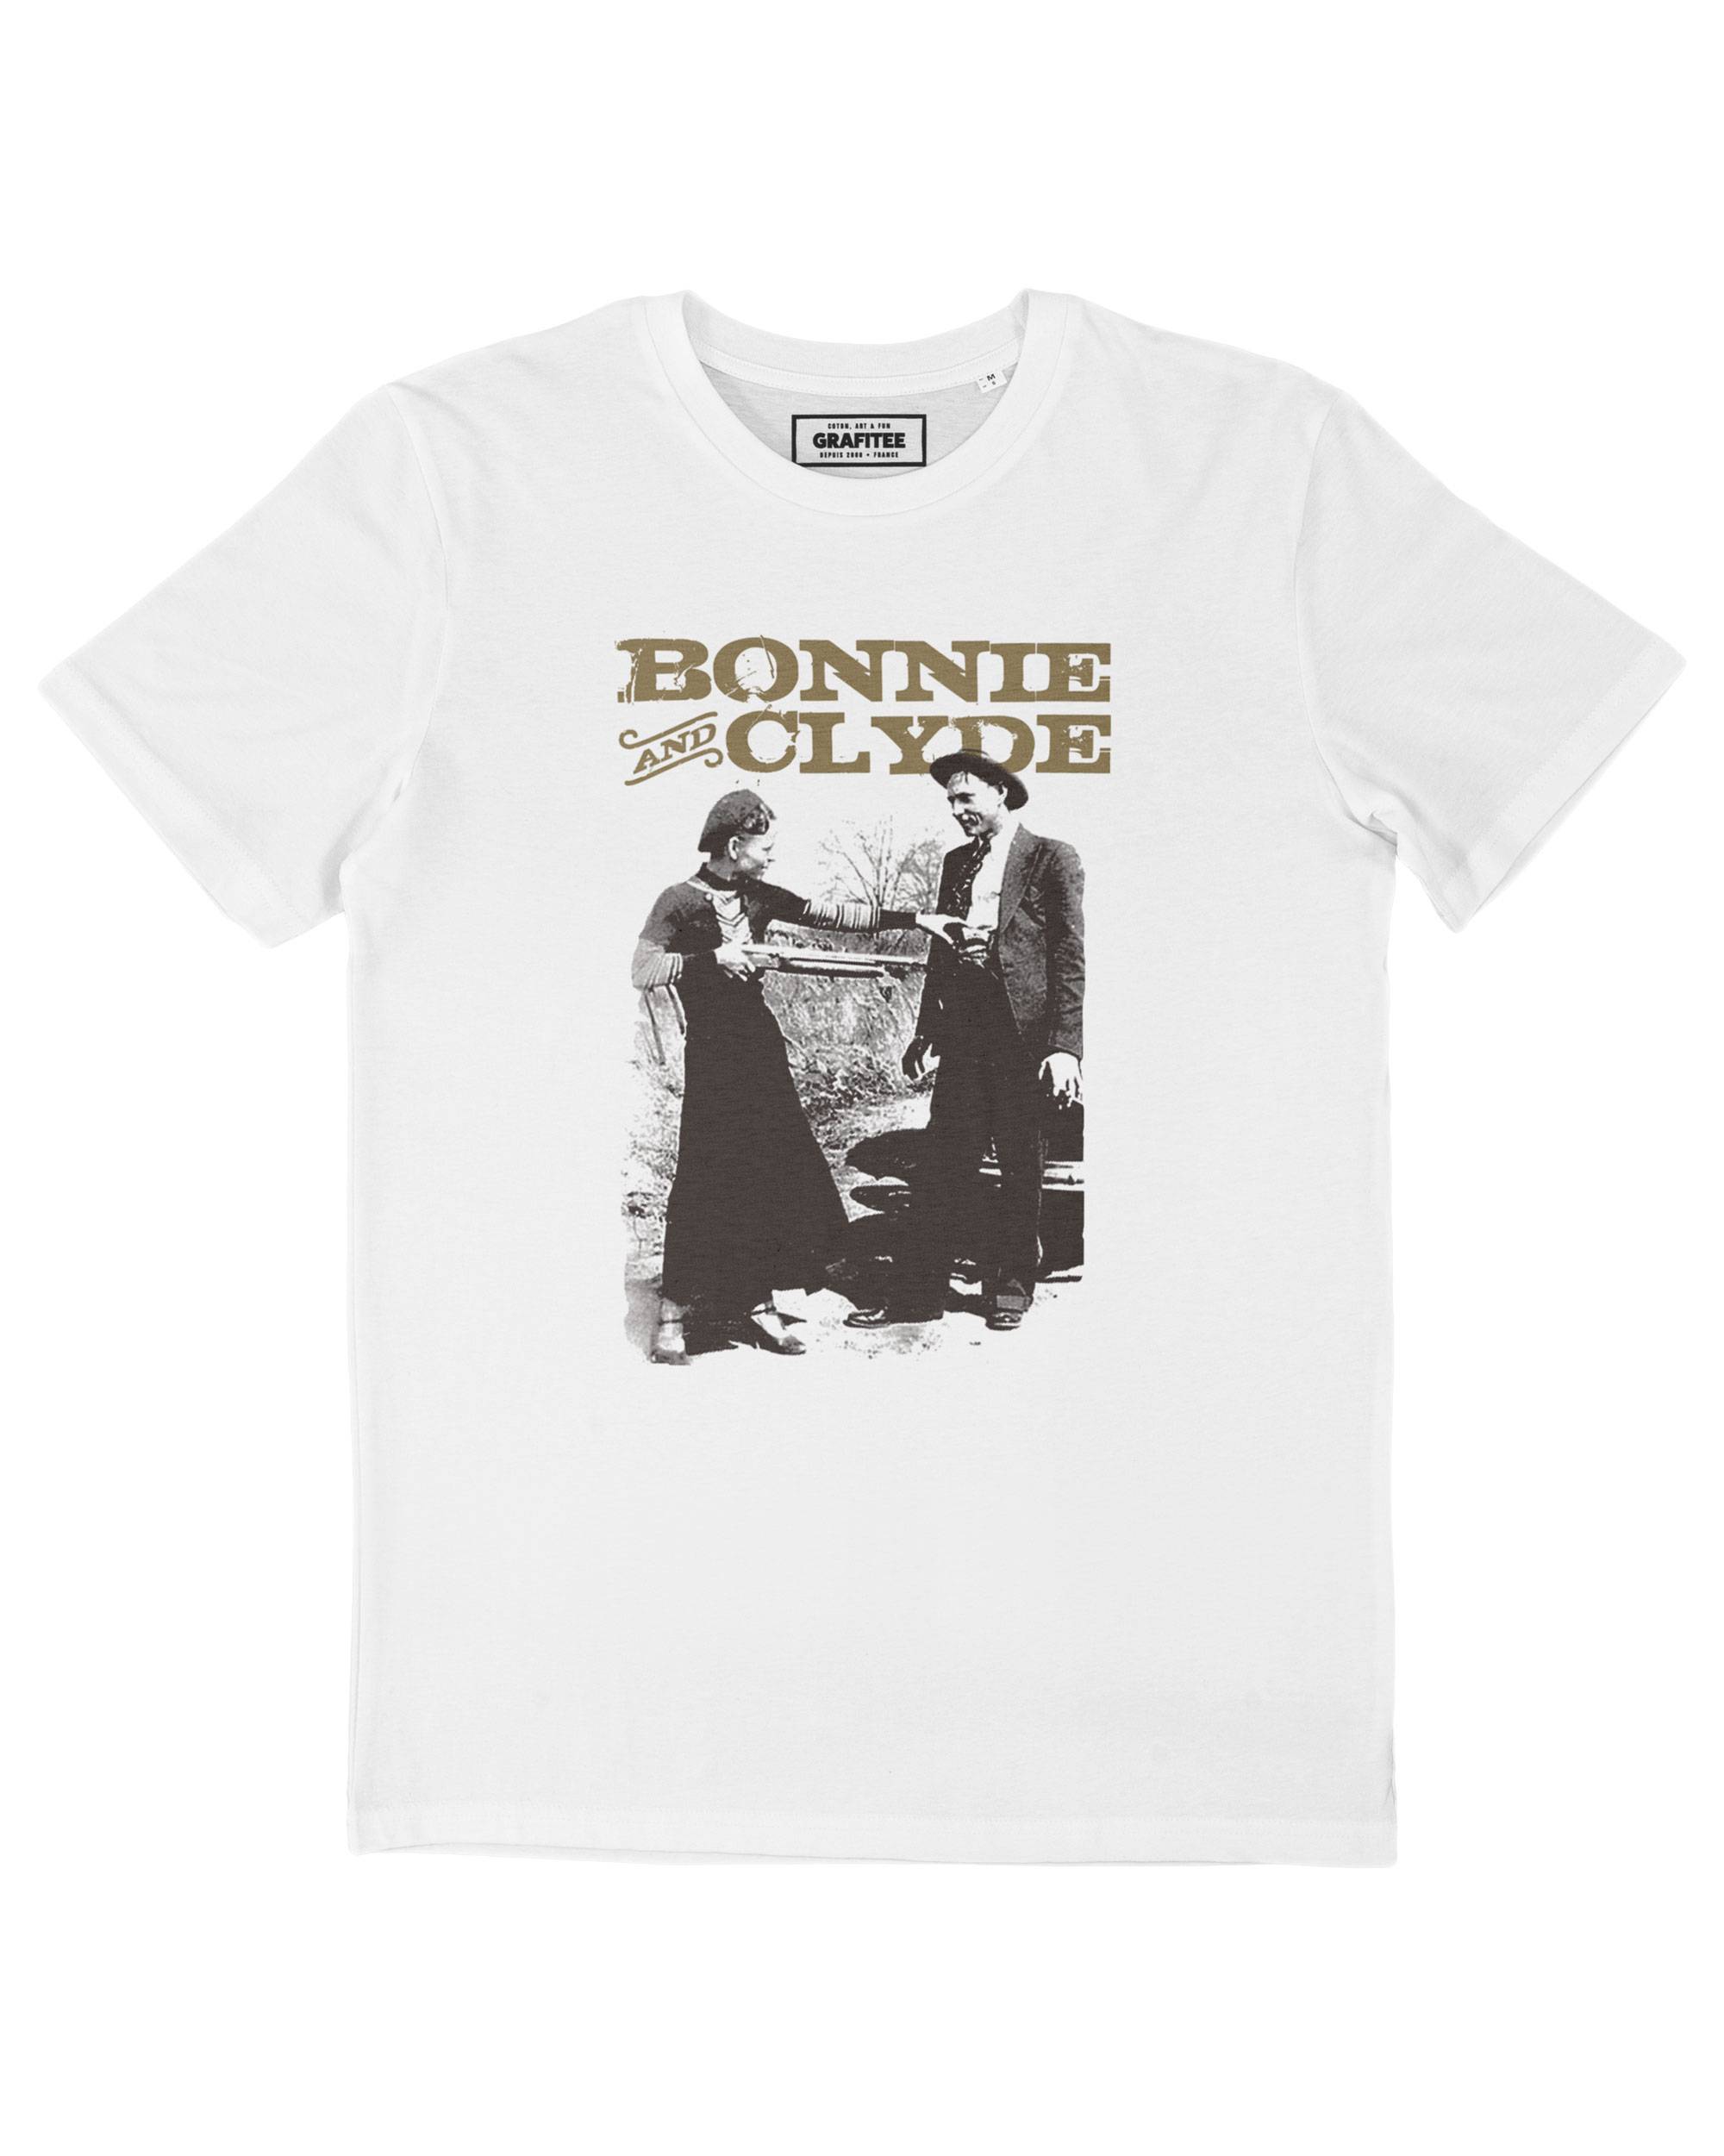 T-shirt Bonnie and Clyde Grafitee